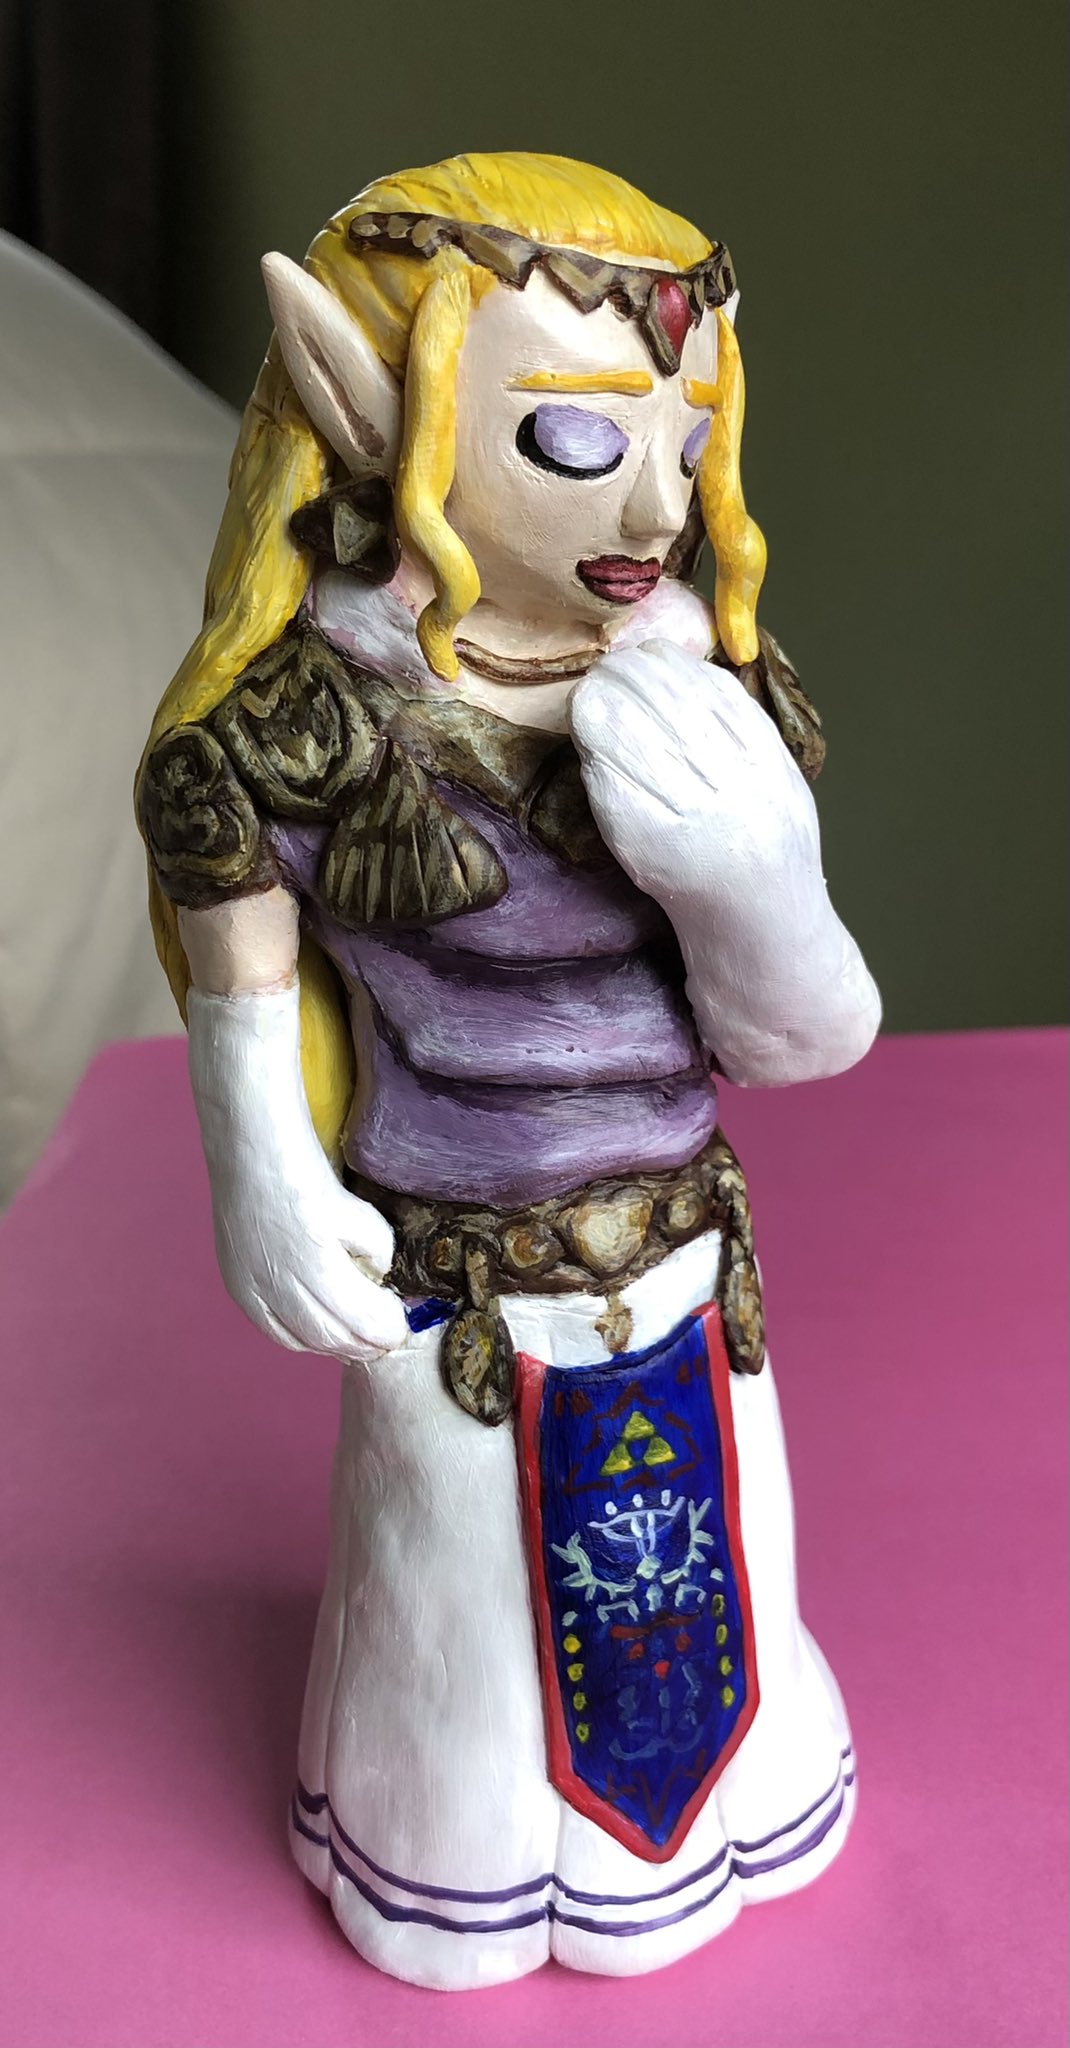 Princess Zelda - ocarina of time figure, 1998